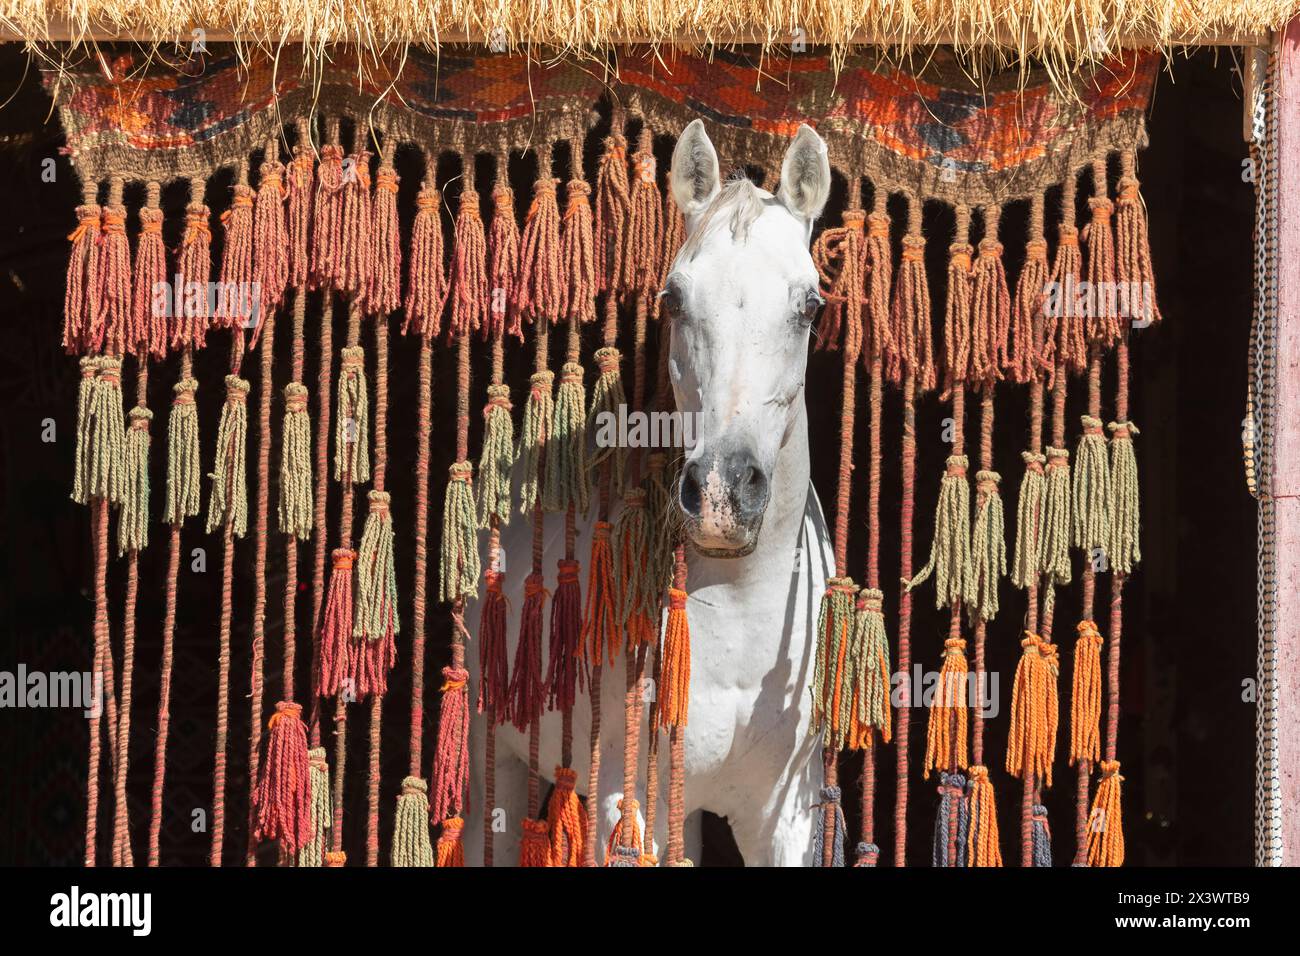 Arabisches Pferd. Der graue Hengst Amun schaut durch einen Vorhang aus Seilen und Quasten. Ägypten Stockfoto